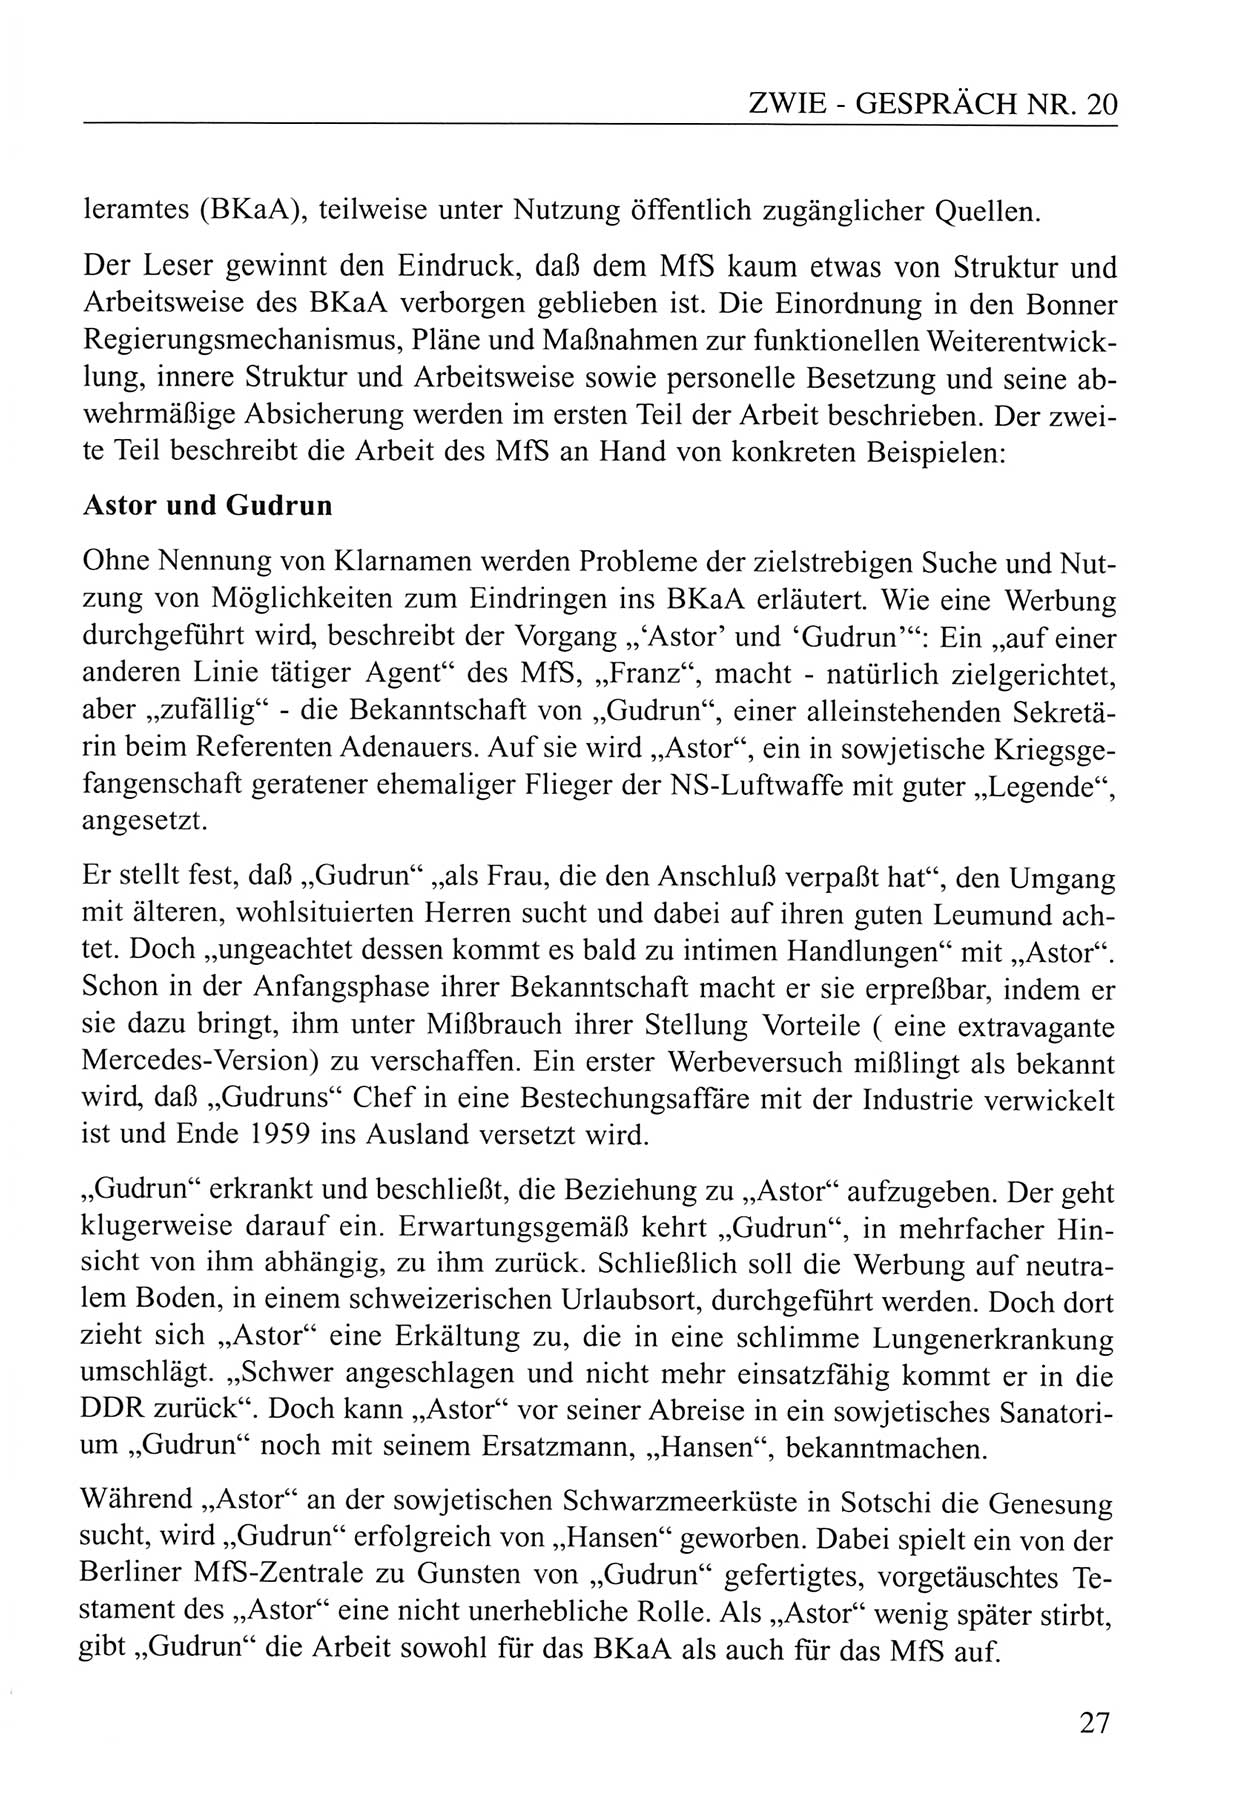 Zwie-Gespräch, Beiträge zum Umgang mit der Staatssicherheits-Vergangenheit [Deutsche Demokratische Republik (DDR)], Ausgabe Nr. 20, Berlin 1994, Seite 27 (Zwie-Gespr. Ausg. 20 1994, S. 27)